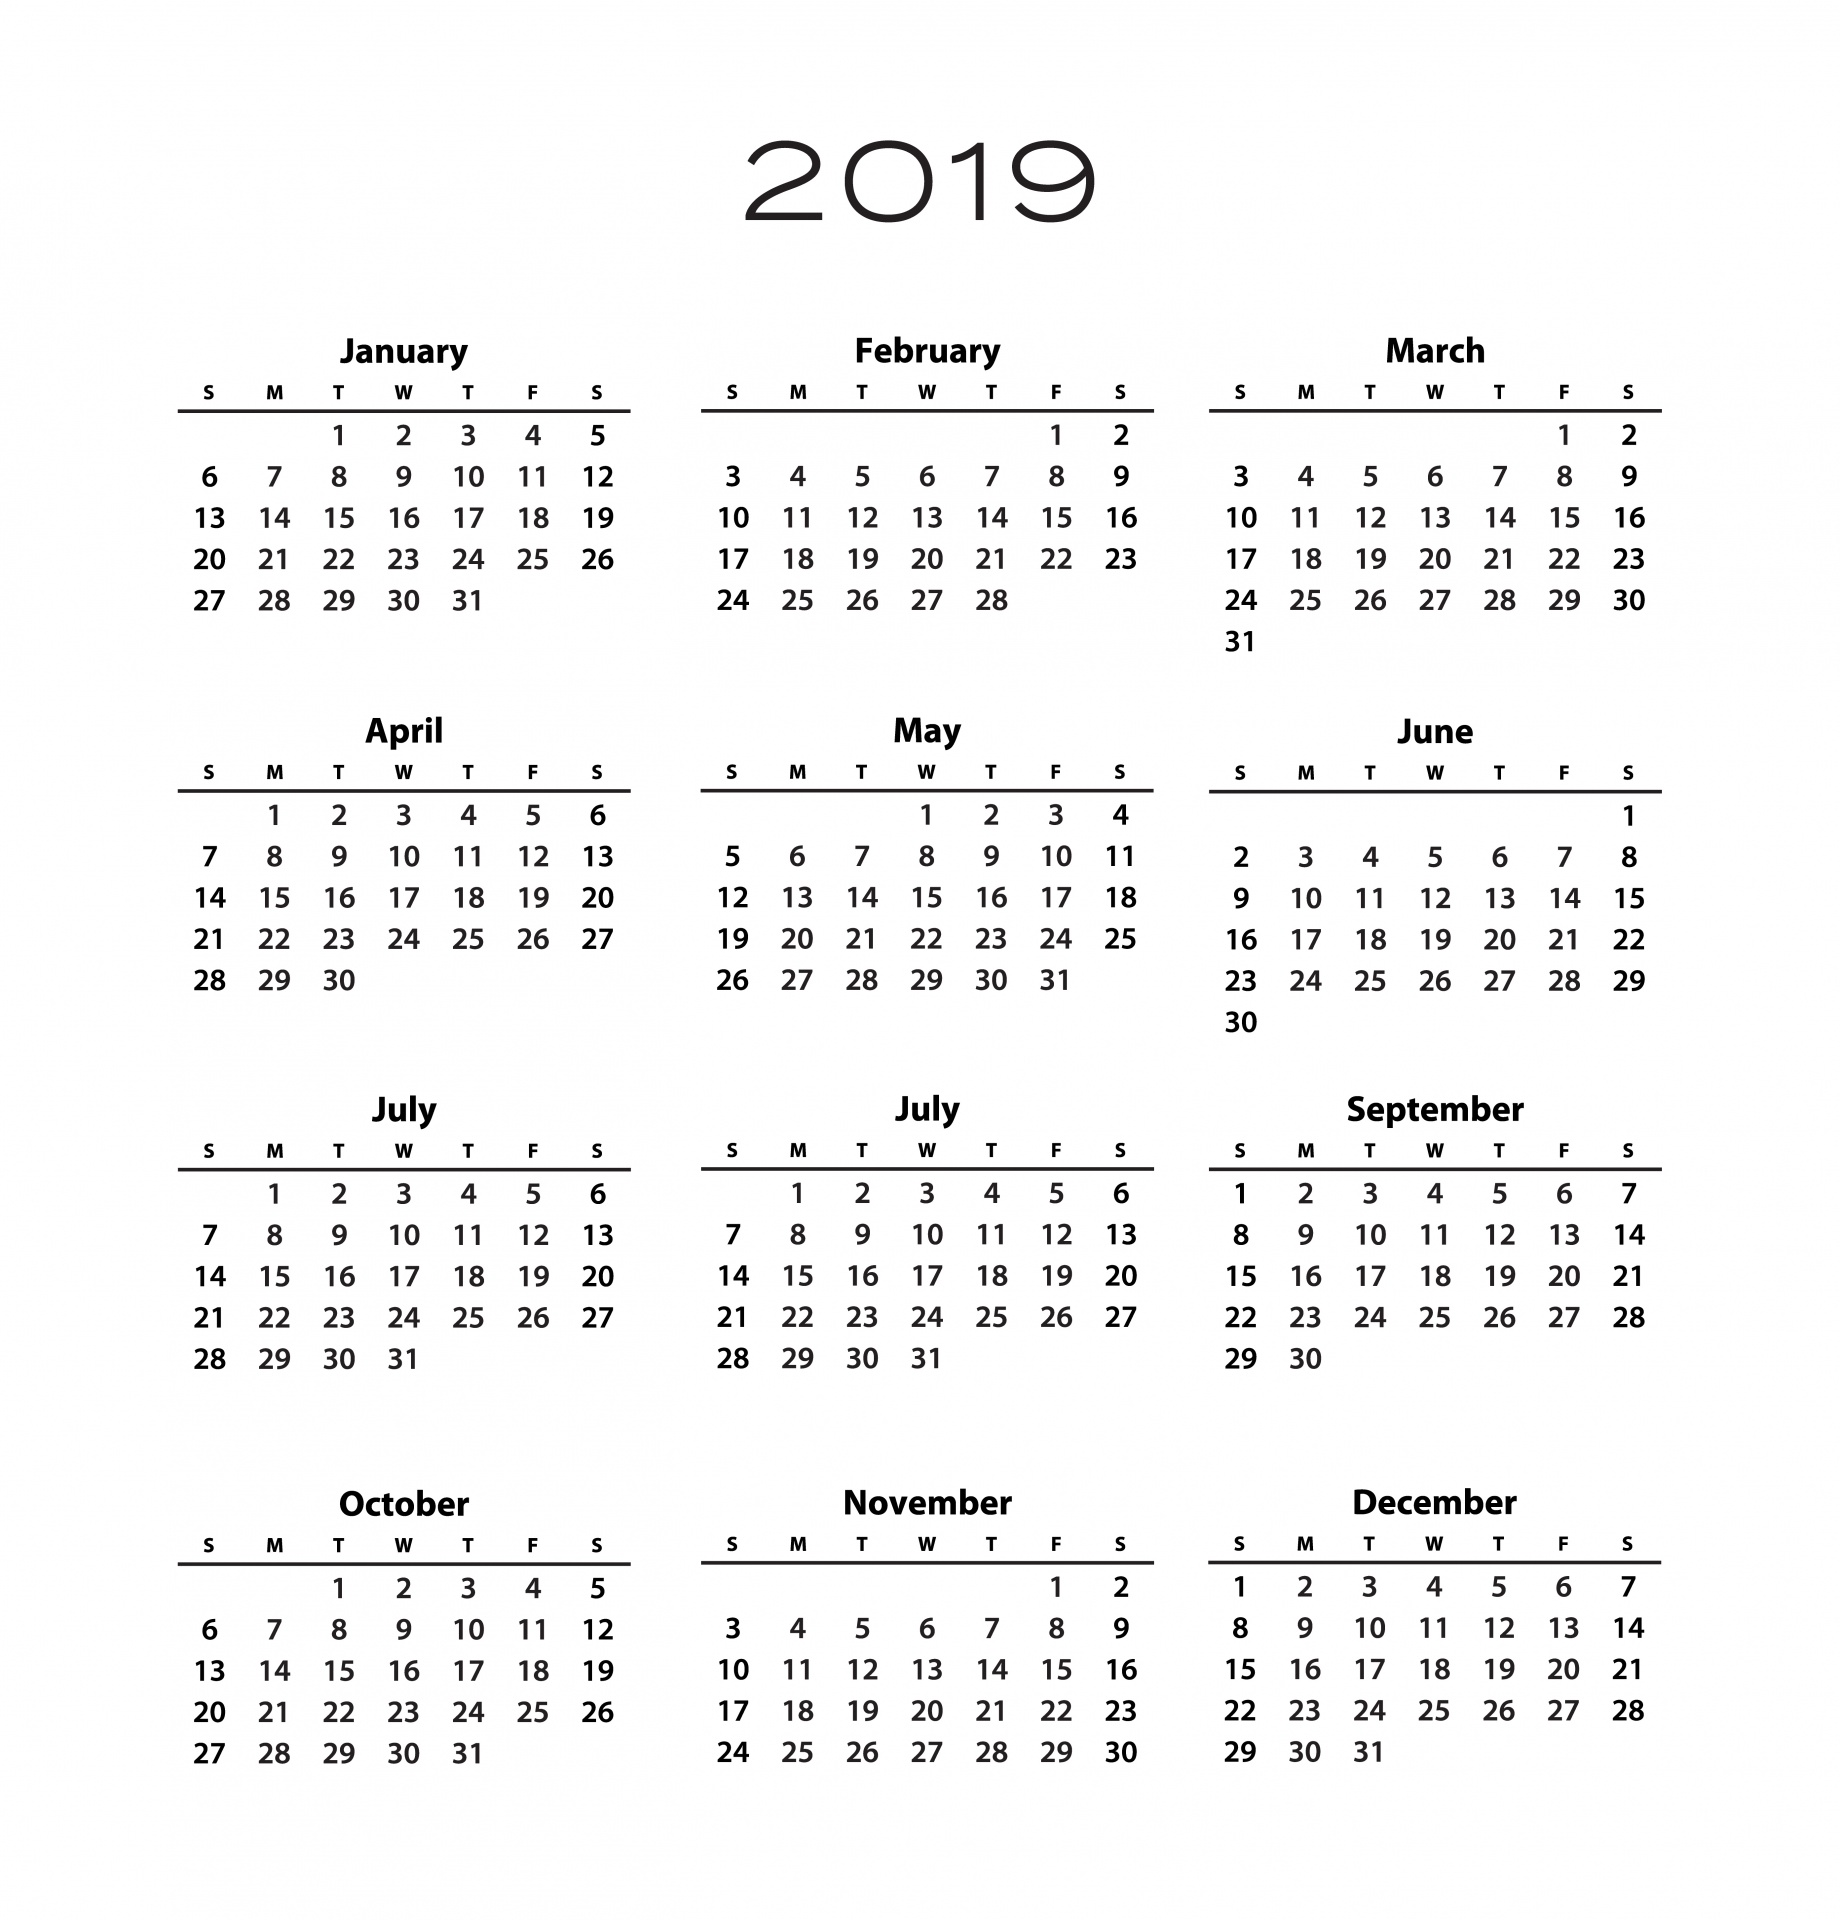 2019 Szablon kalendarza